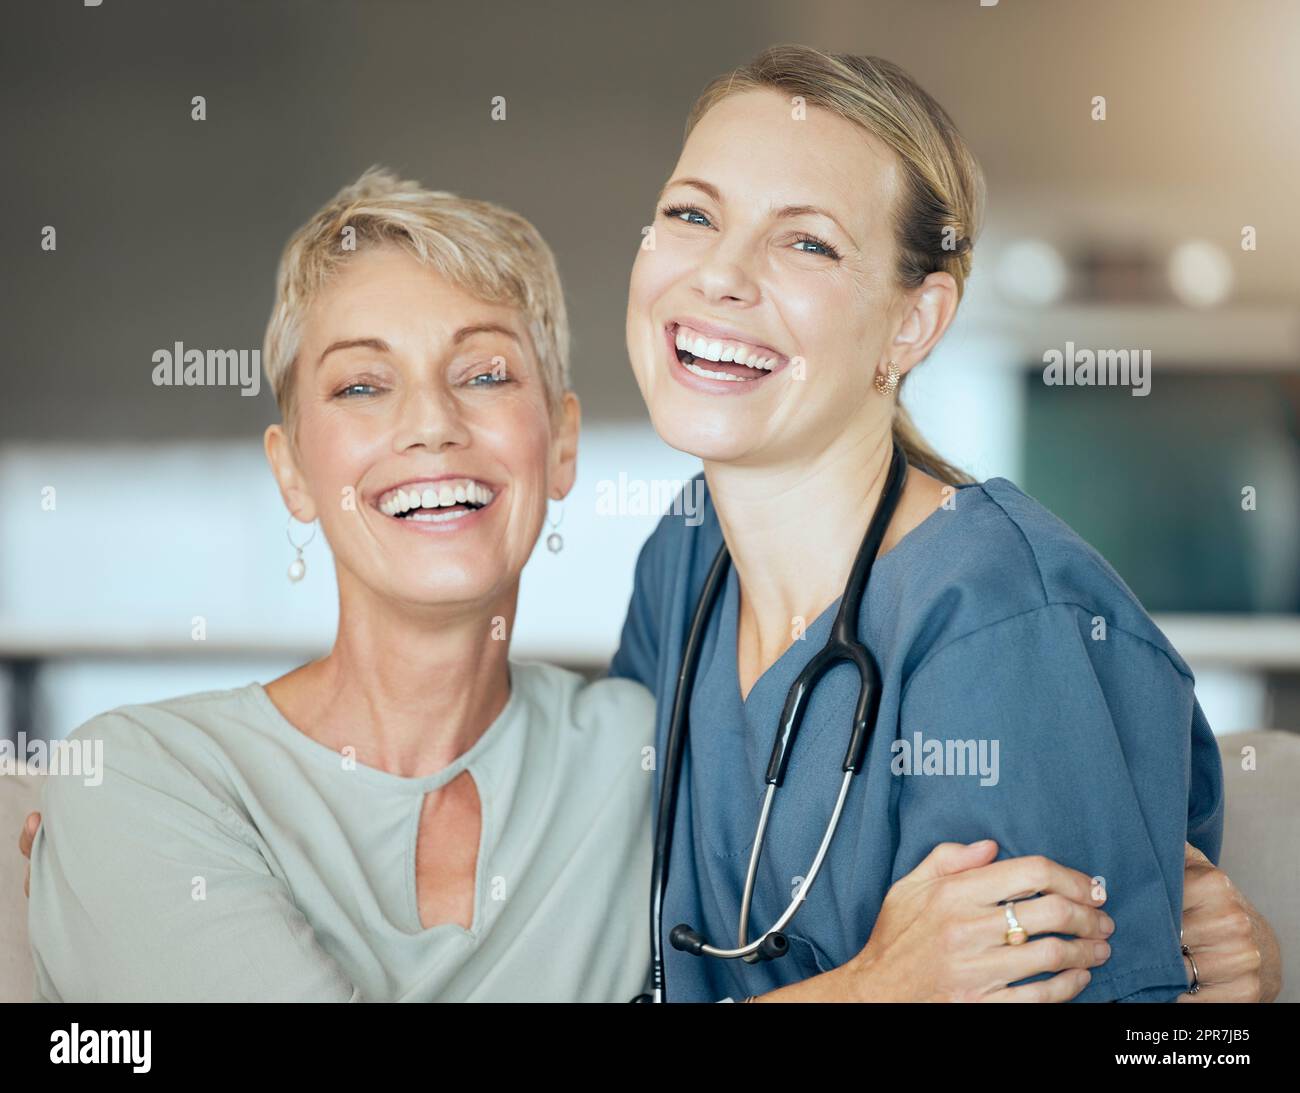 Deux femmes souriantes montrant seulement le lien entre le patient et le médecin pendant un examen à la maison. Un médecin montrant son soutien à la patiente pendant la récupération Banque D'Images